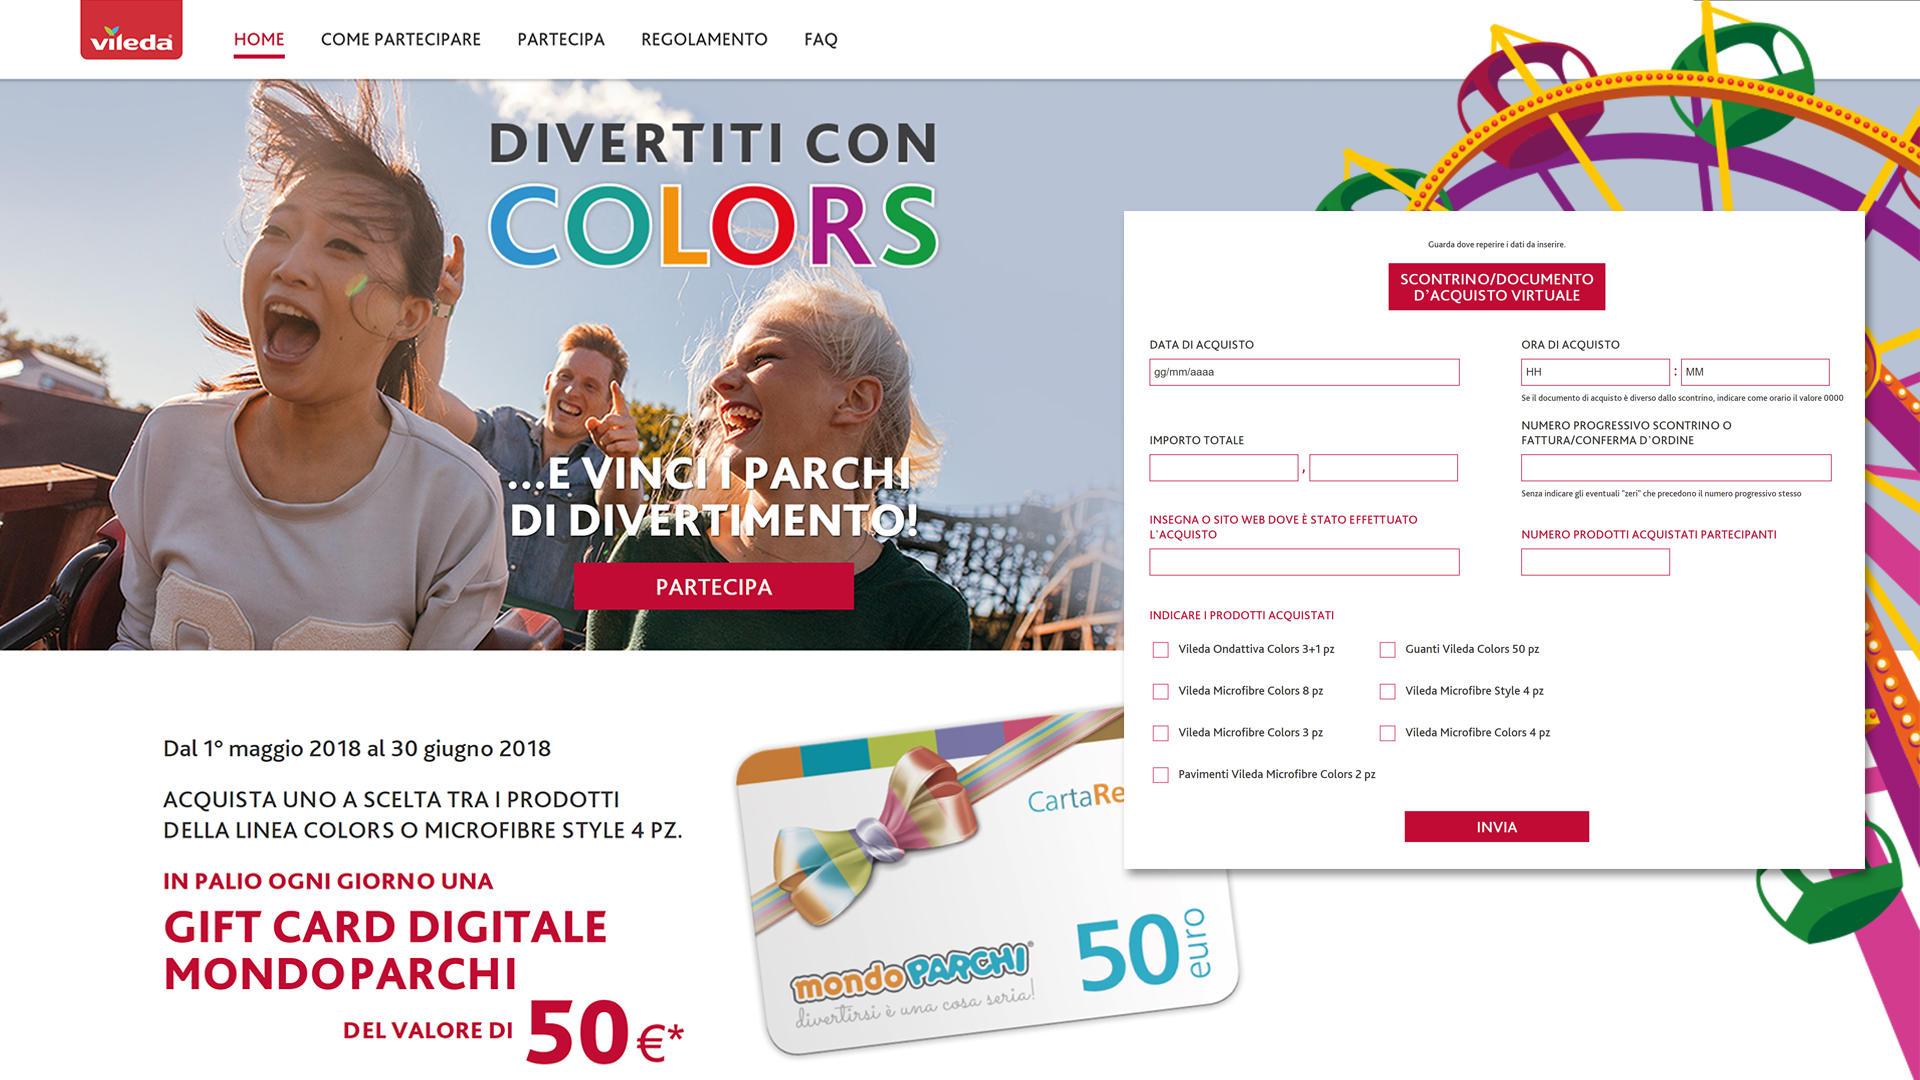 Concorso a premi Divertiti con Colors, acquista i prodotti promozionati Vileda e puoi vincere na Gift Card Digitale MondoParchi